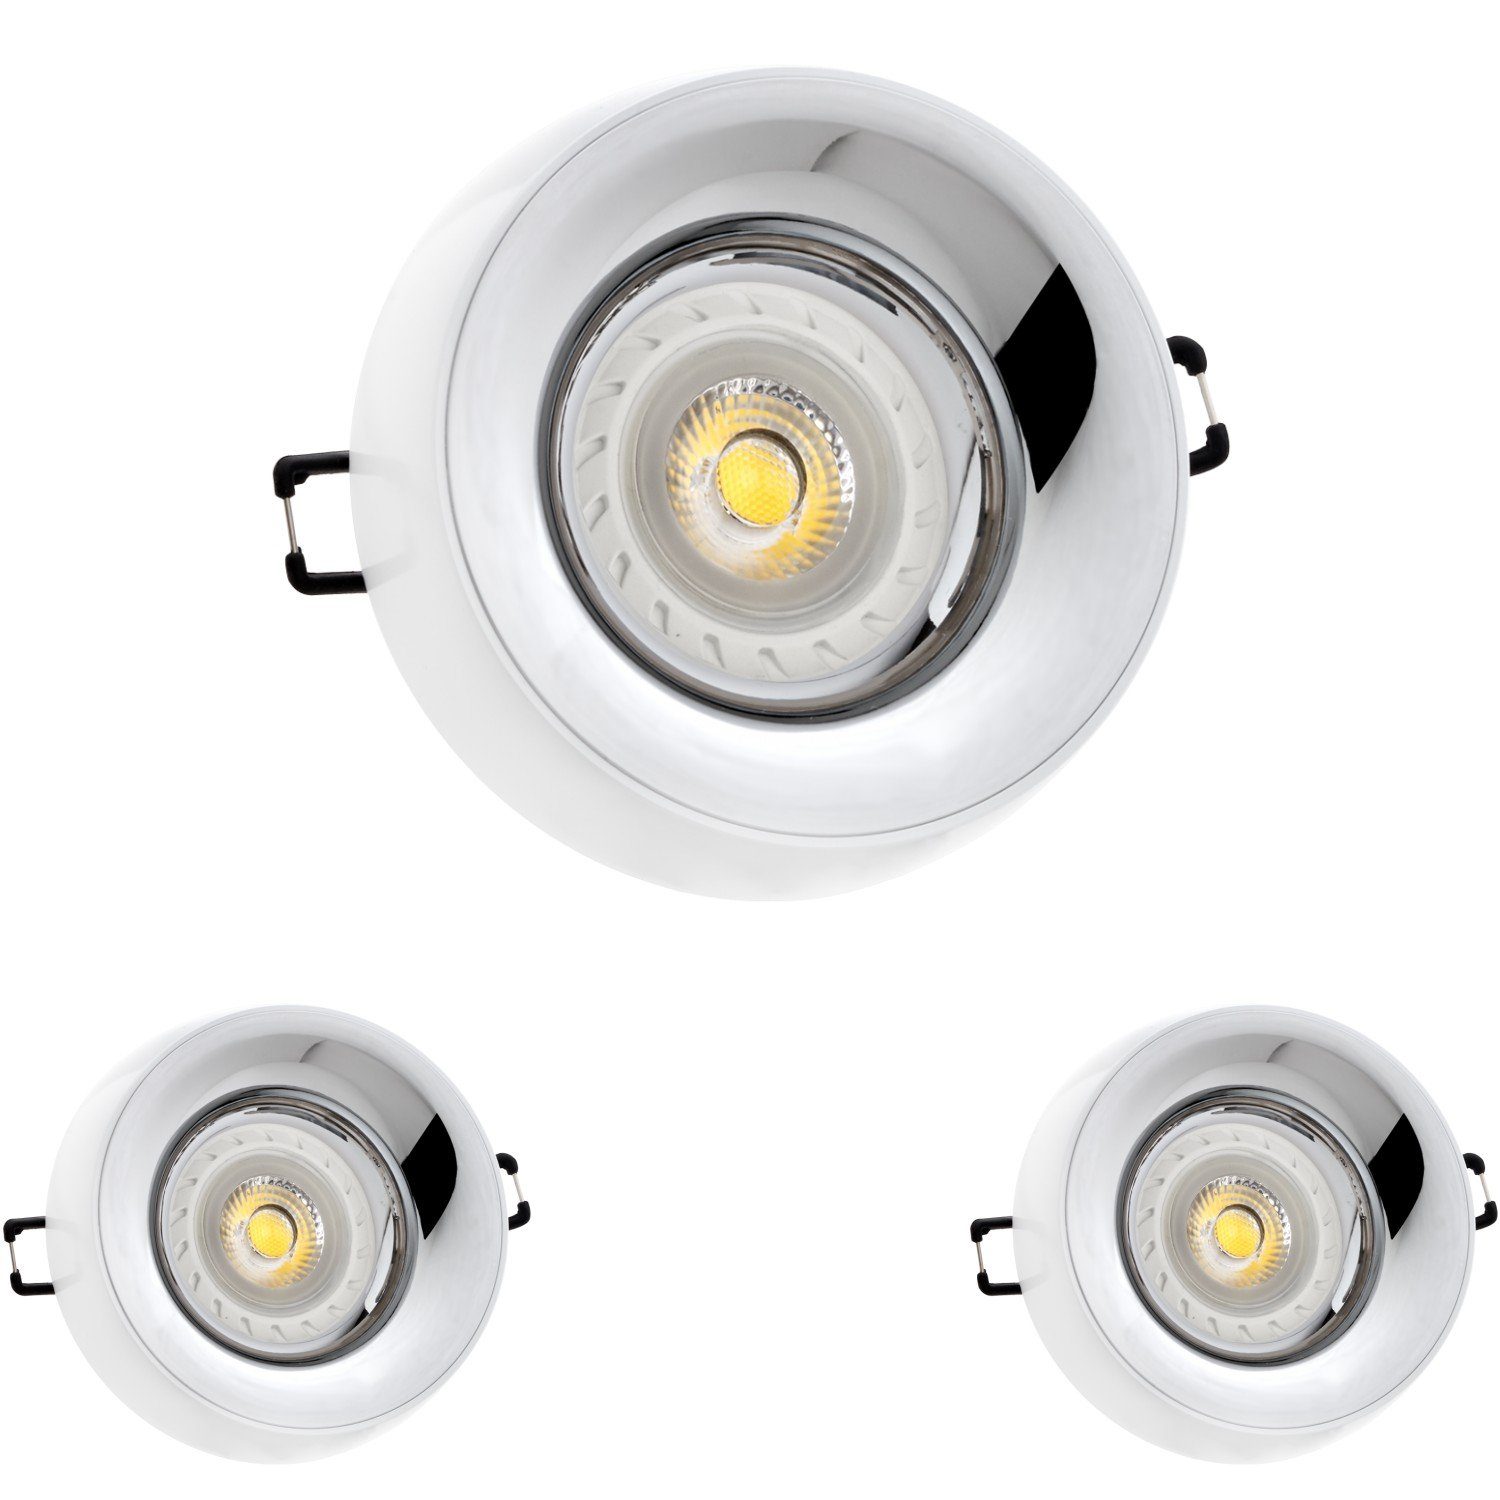 Markenstrahler Einbaustrahler Einbaustrahler GU10 von LEDAND Weiß Set LEDANDO LED LED mit 3er LED